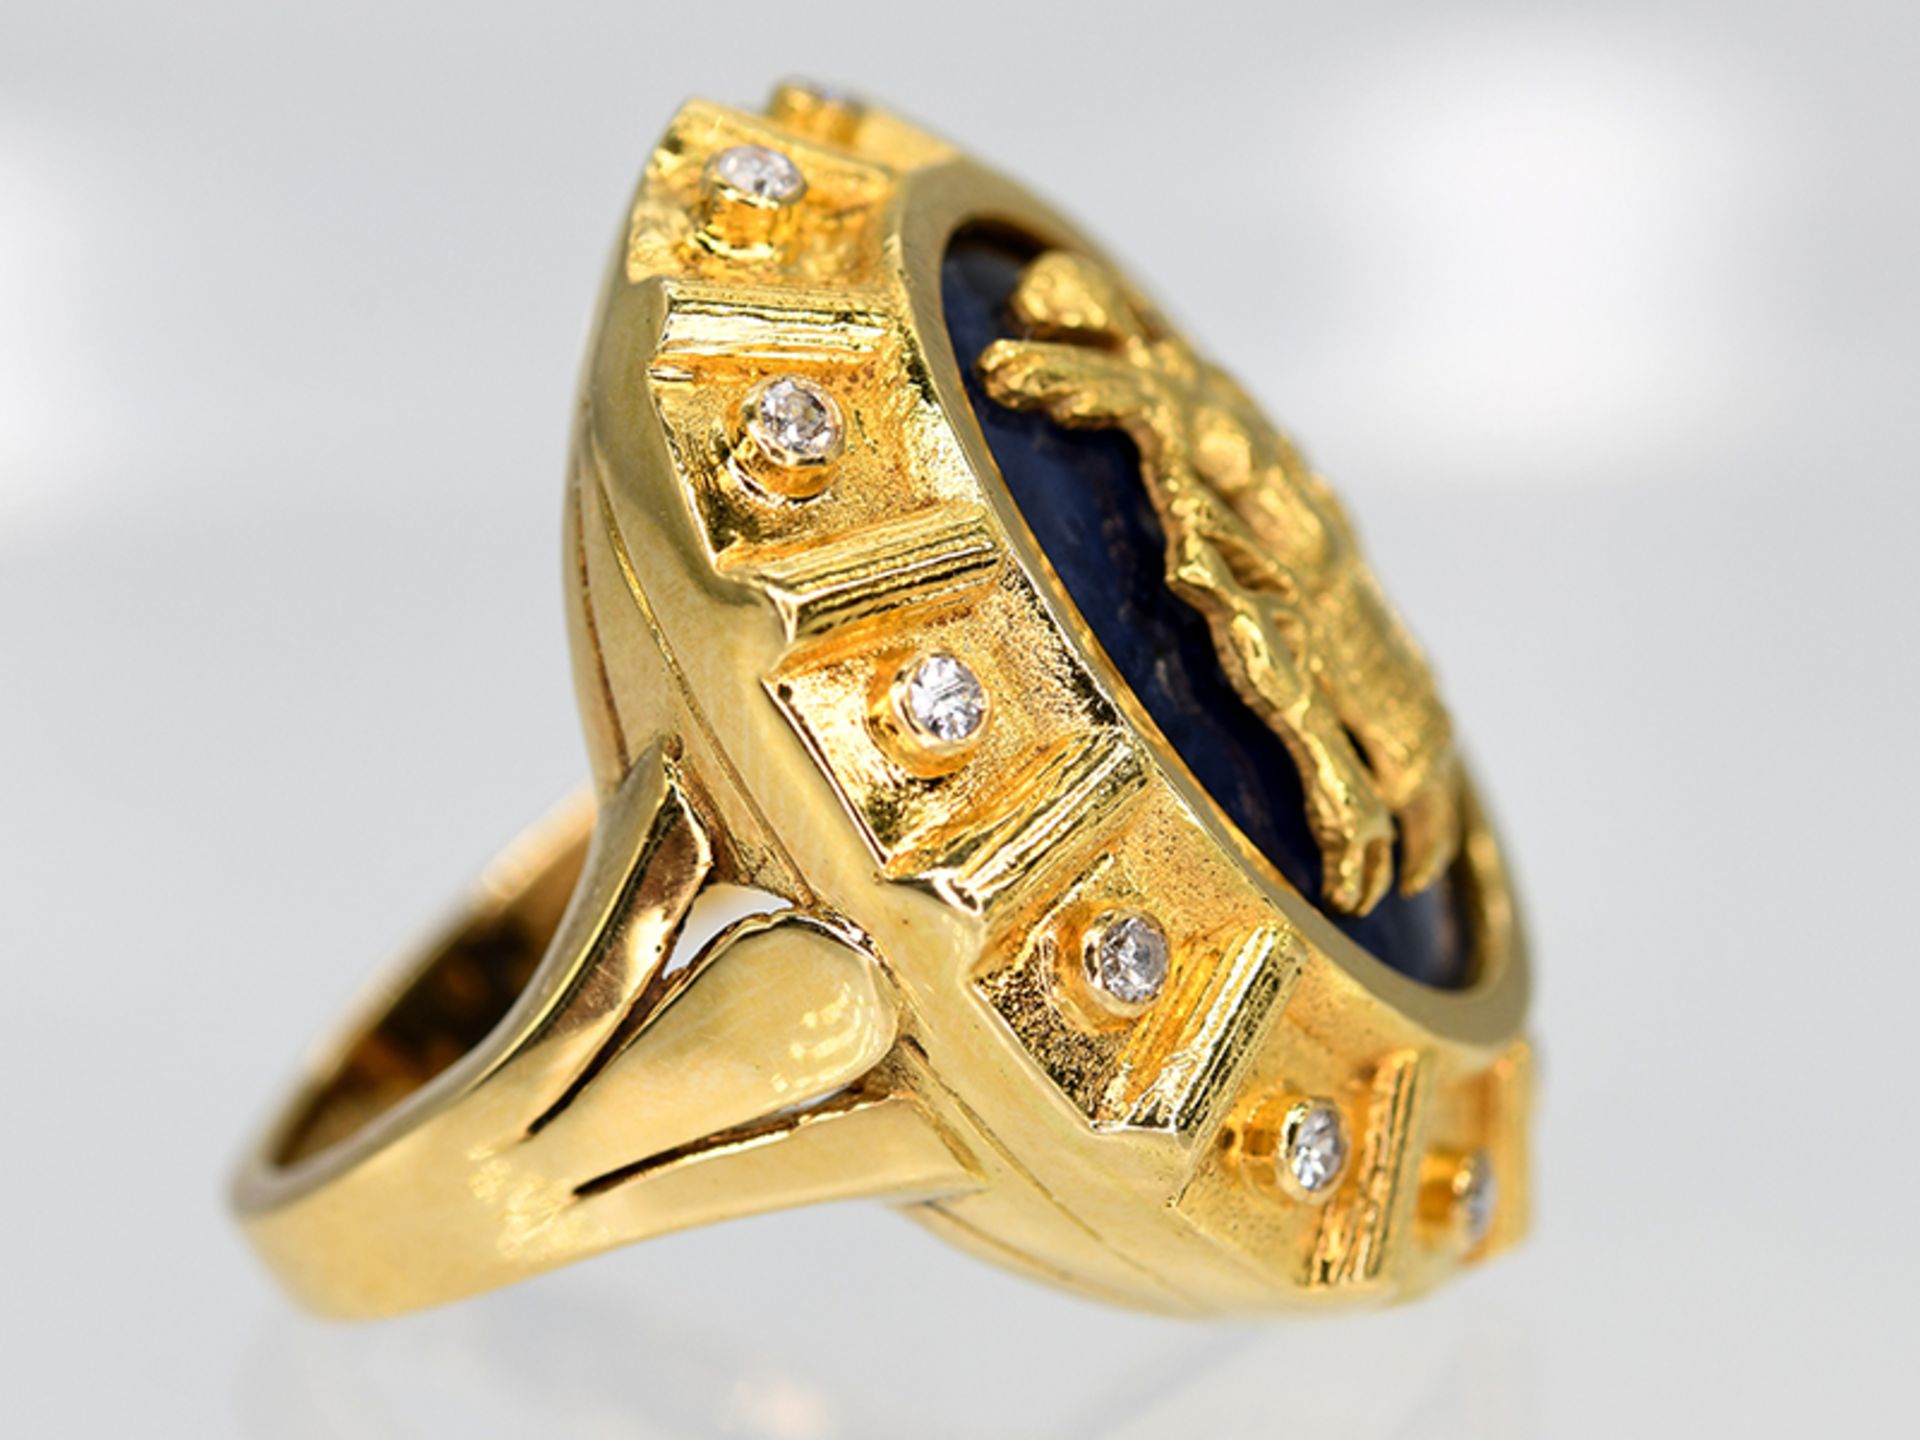 Massiver Ring mit Lapislazuli und 12 Achtkant-Diamanten, zus. ca. 0,1 ct, griechische Goldschmiedear - Image 3 of 5